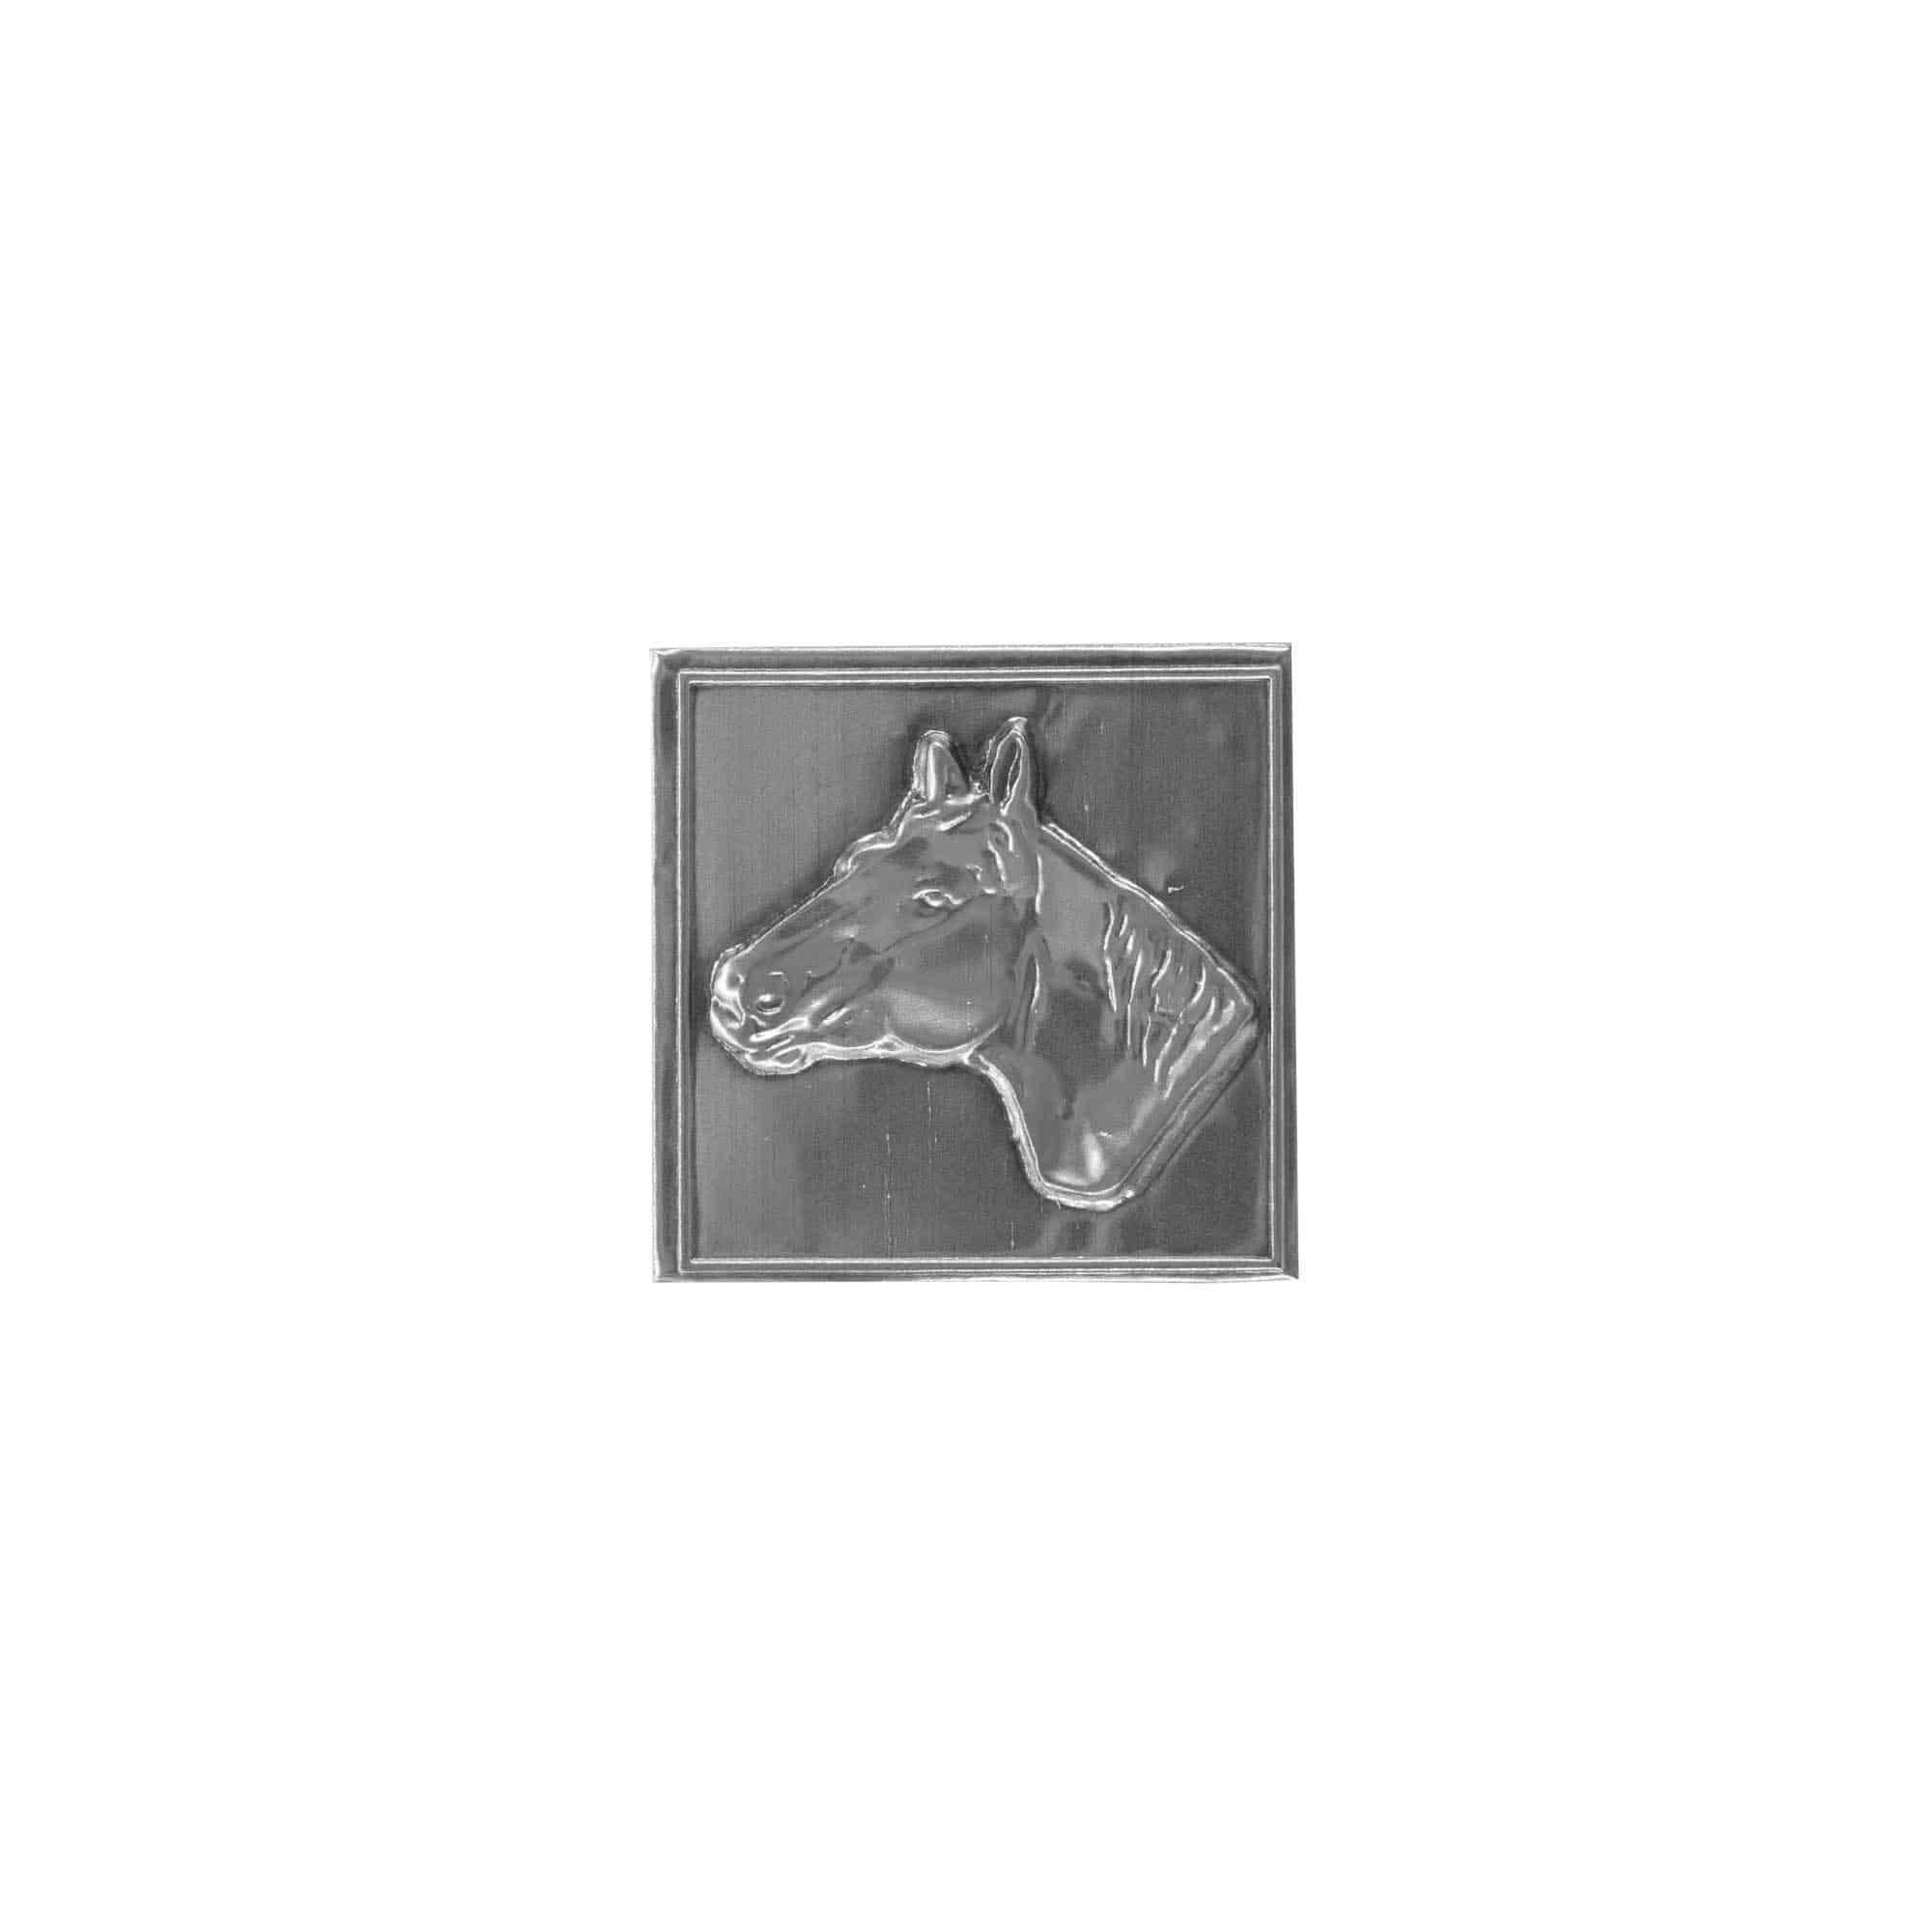 Etykieta cynowa 'Koń', kwadratowa, metal, kolor srebrny